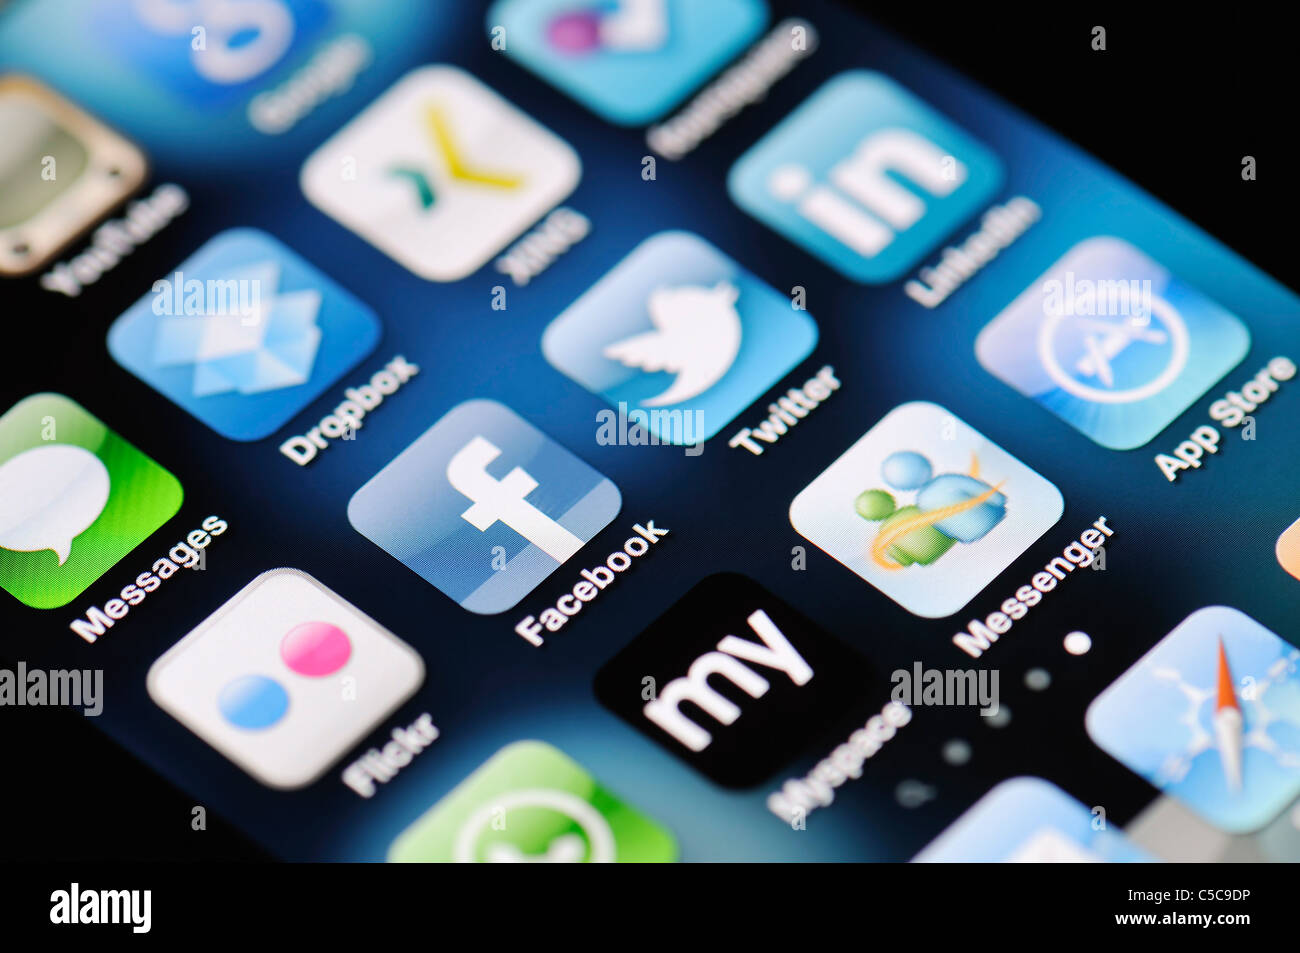 Eine Nahaufnahme von einem Apple iPhone 4 Bildschirm zeigt den App Store und verschiedenen social Media-apps Stockfoto